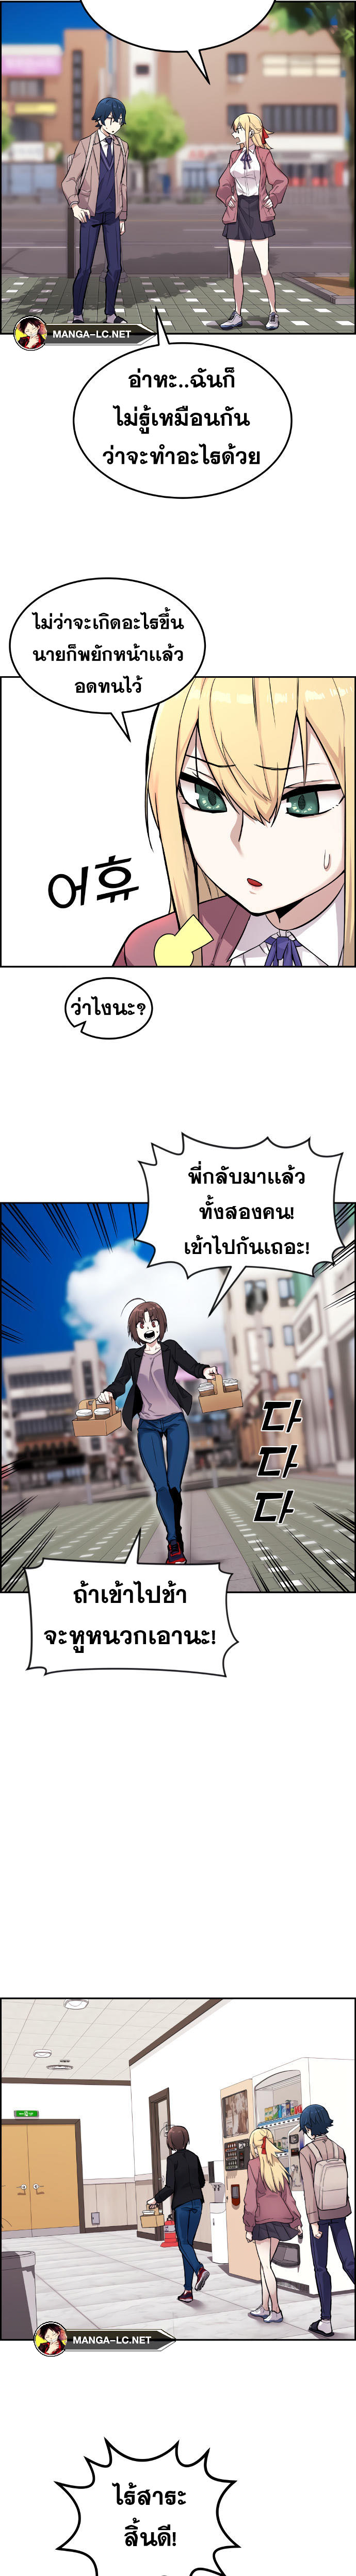 Webtoon Character Na Kang Lim ตอนที่ 5 (7)